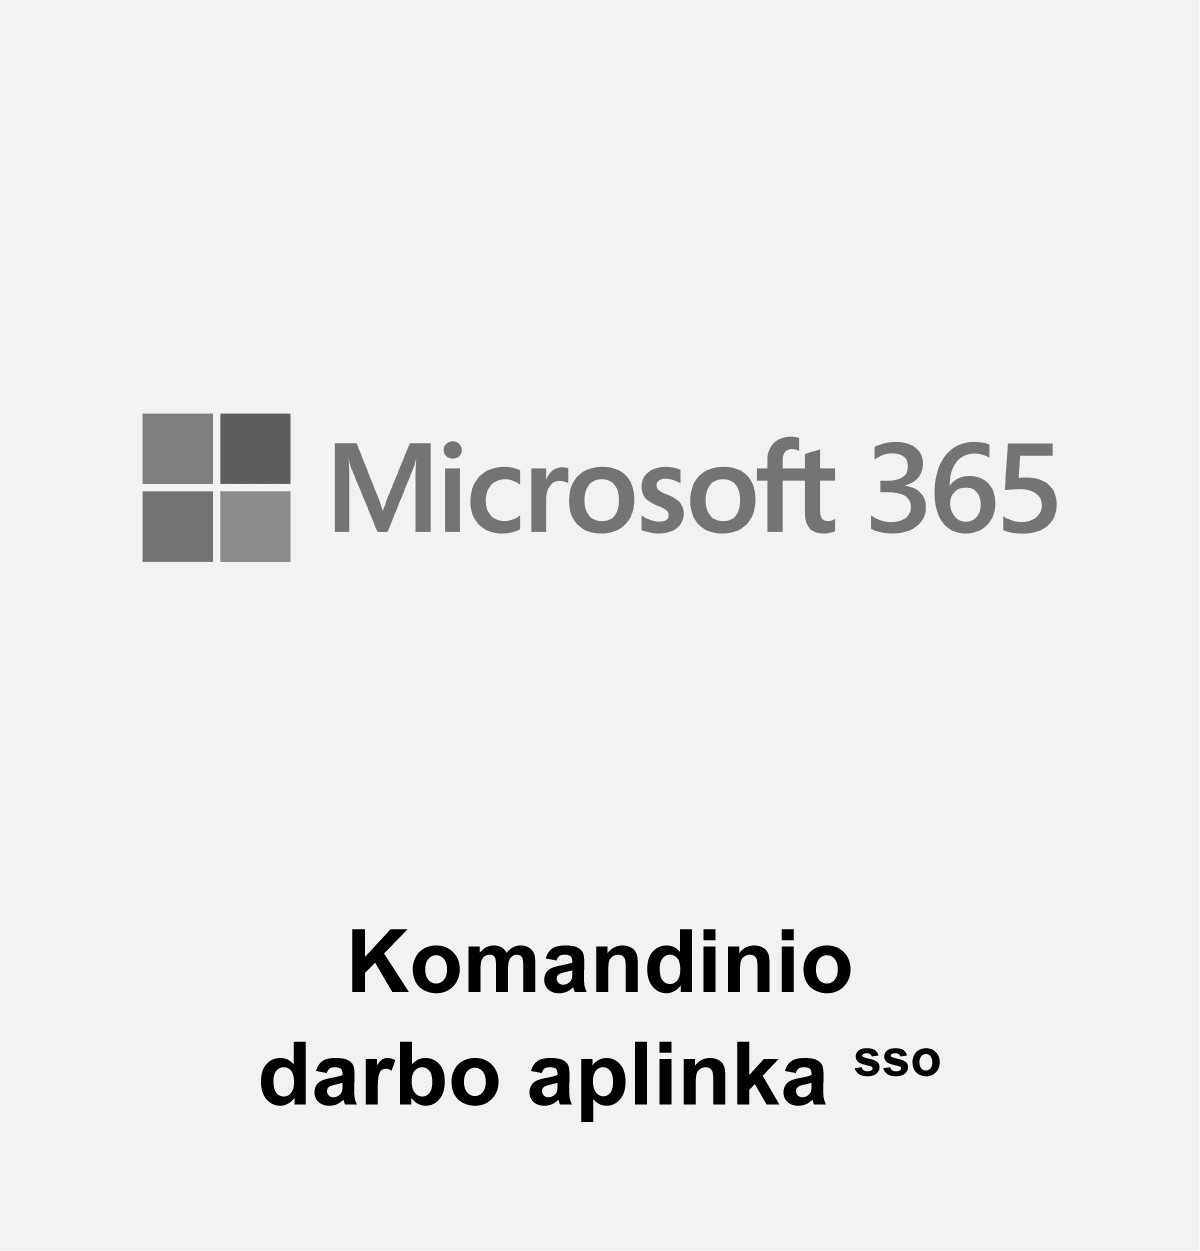 Microsoft365 – komandinio darbo aplinkae